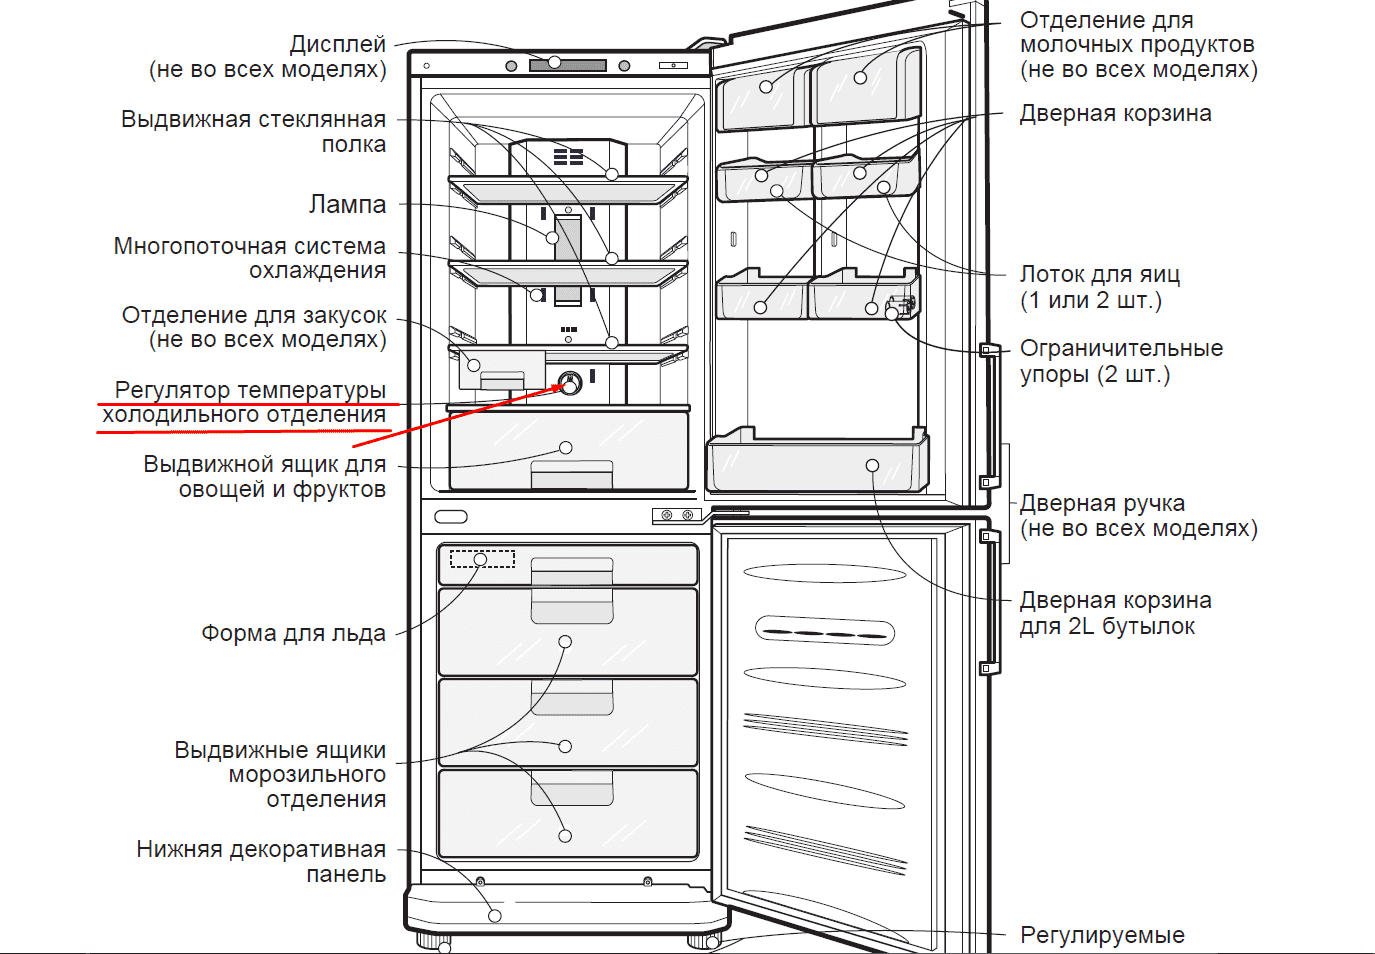 Капельное размораживание холодильной камеры: главные особенности и принцип работы, преимущества и недостатки